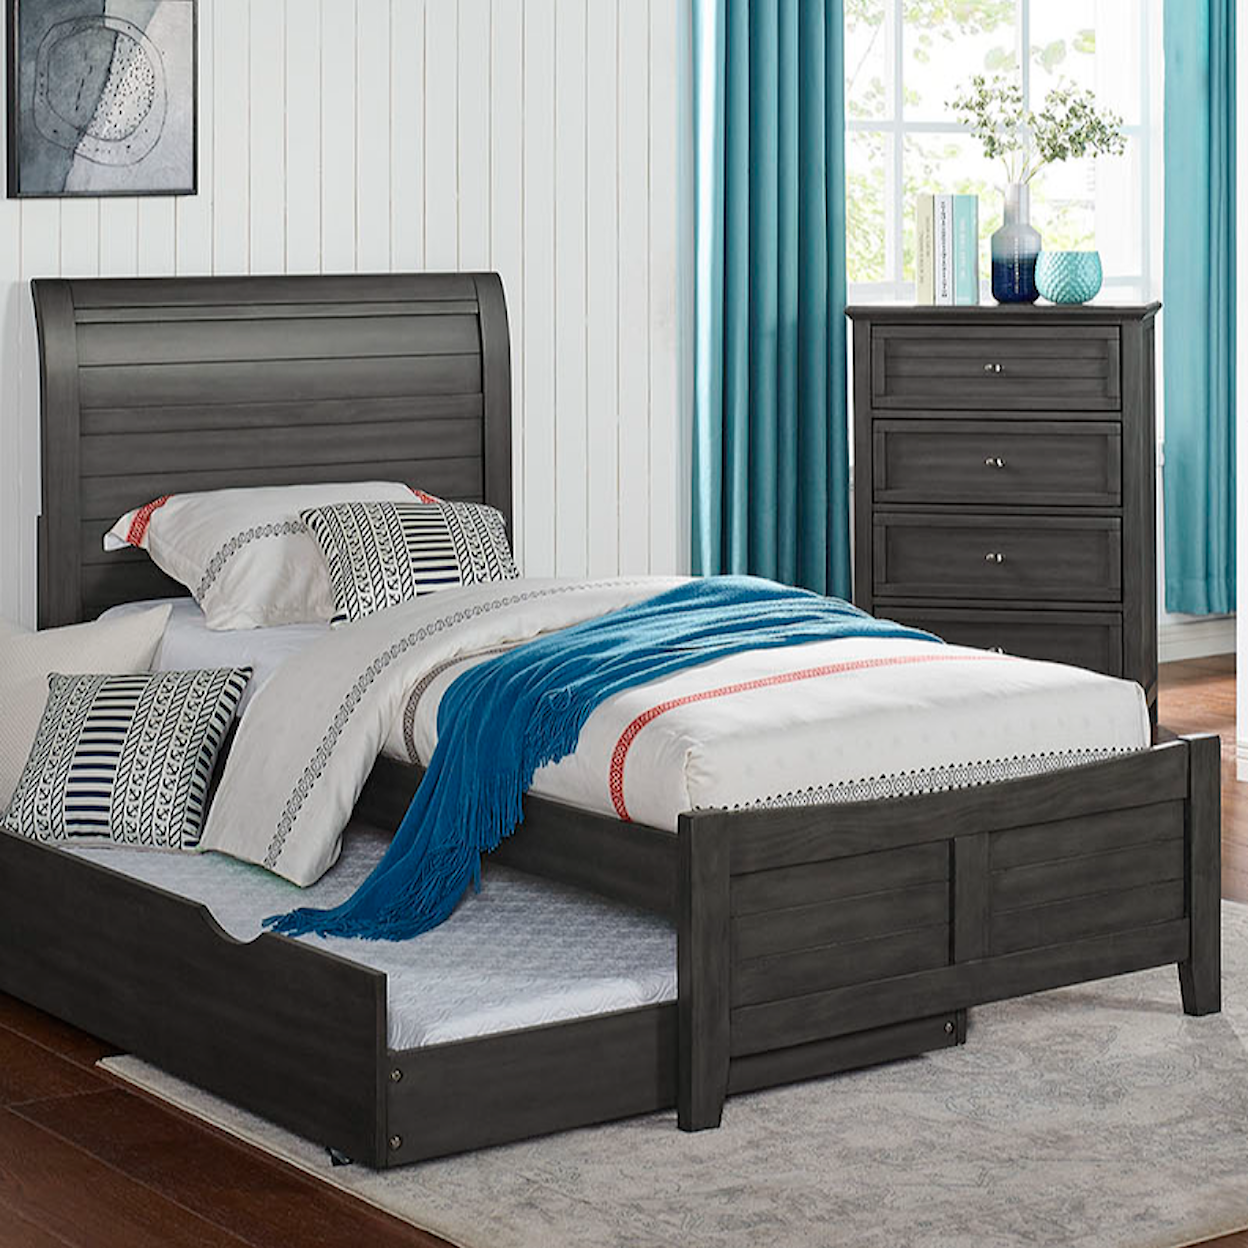 Furniture of America Brogan Full Bed